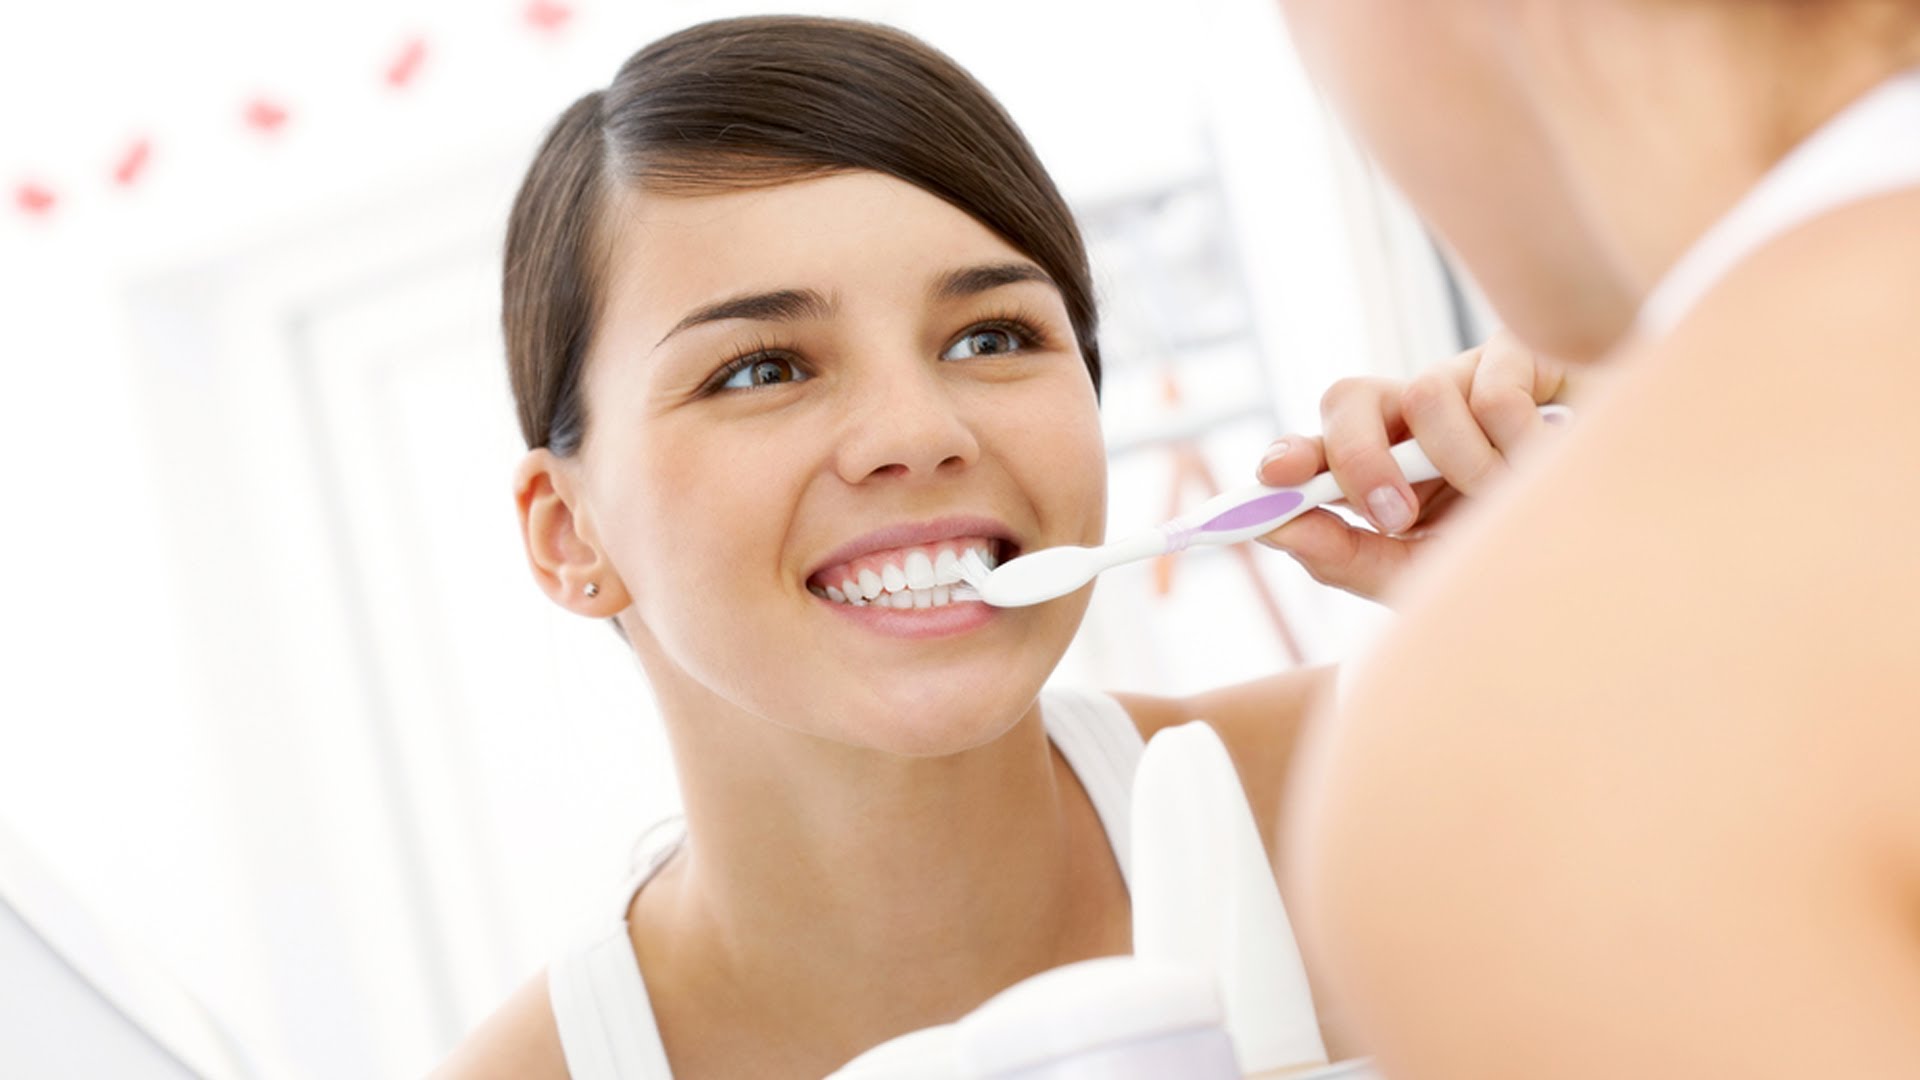 Як правильно чистити зуби   чистка, догляд та правила підтримки зубної гігієни